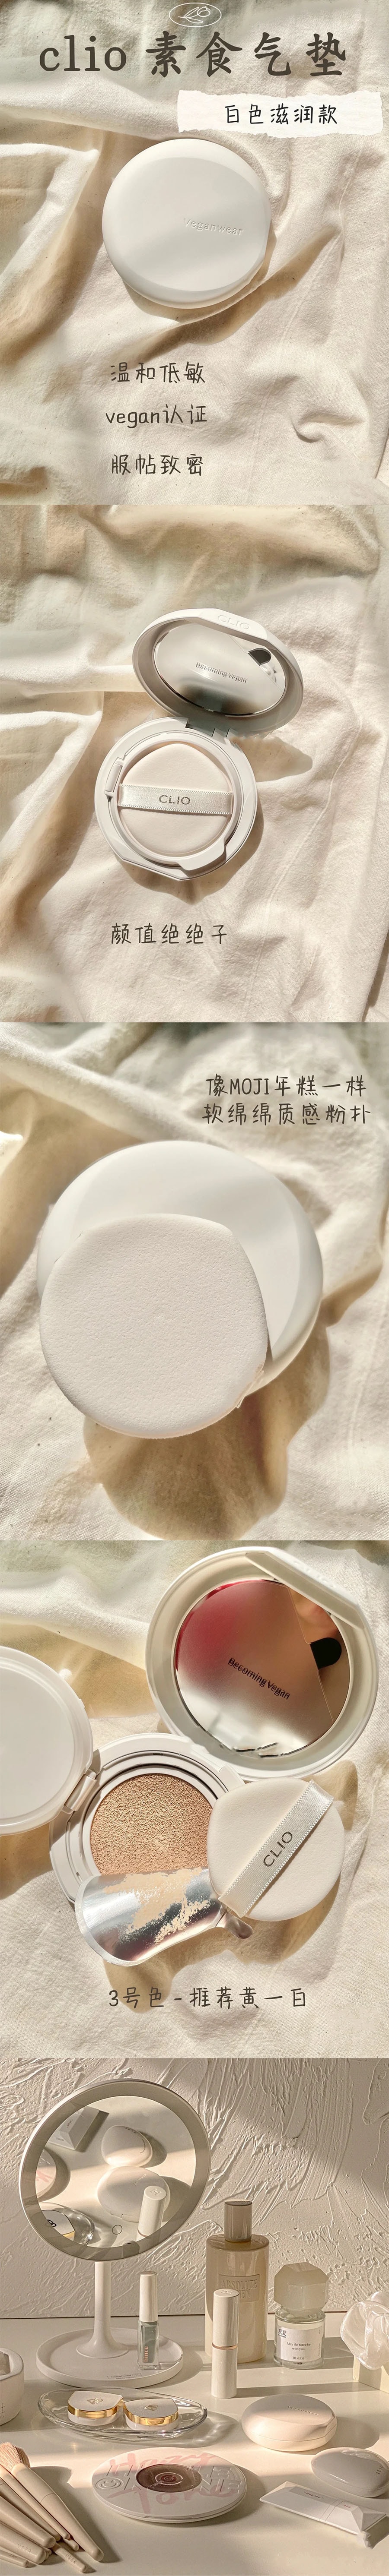 韓國 CLIO 珂萊歐 新款Veganwear素食主義水光氣墊 #02 亮白色 15g*2 含替換芯.